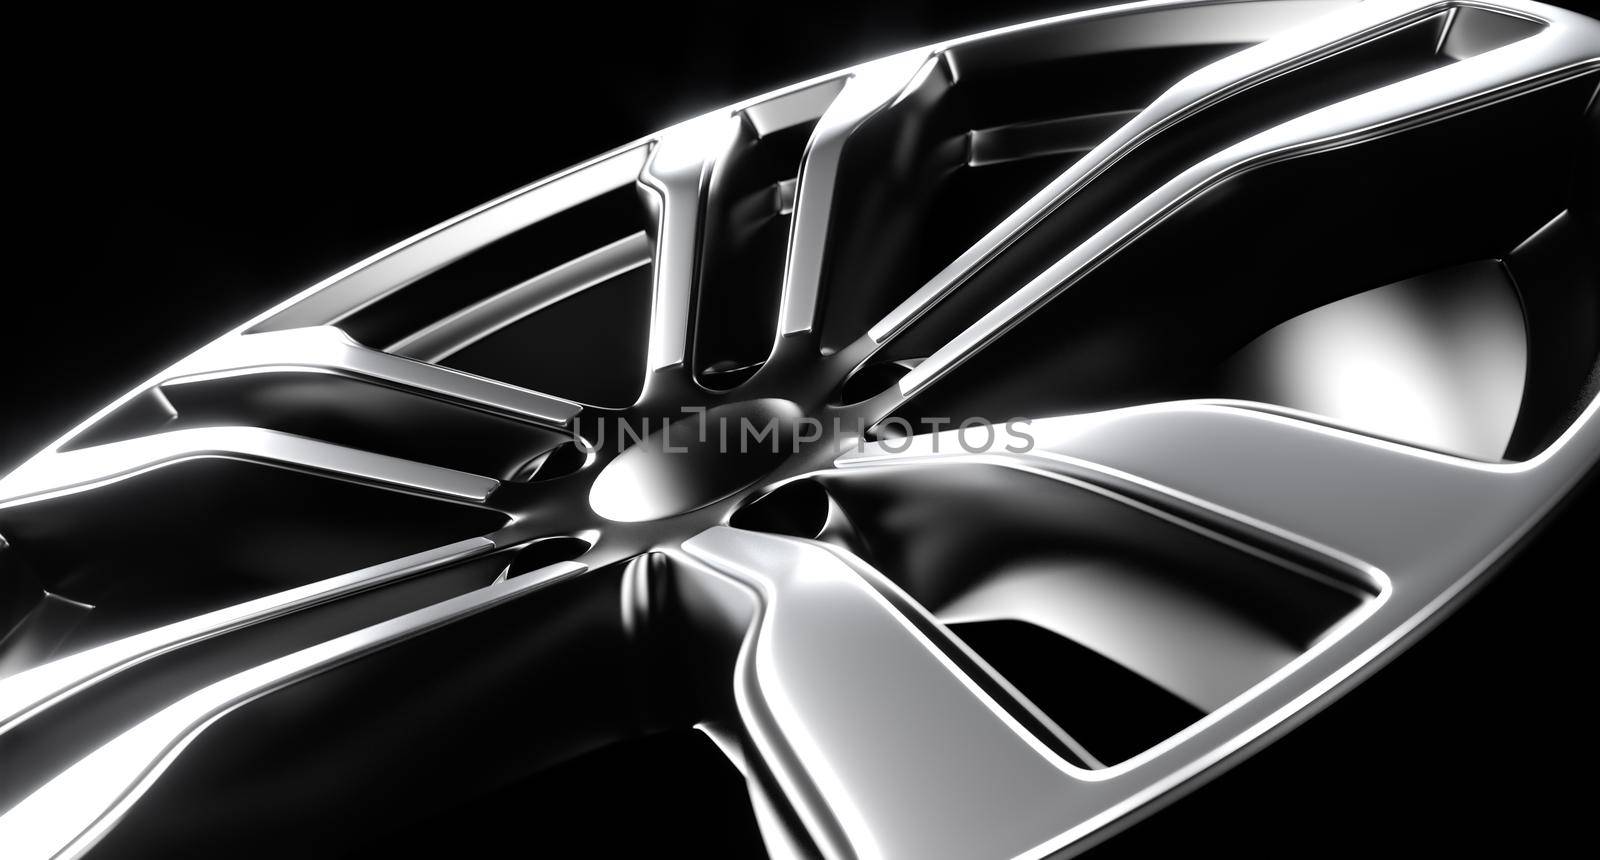 Aluminum car rim close up, 3D rendering illustration.